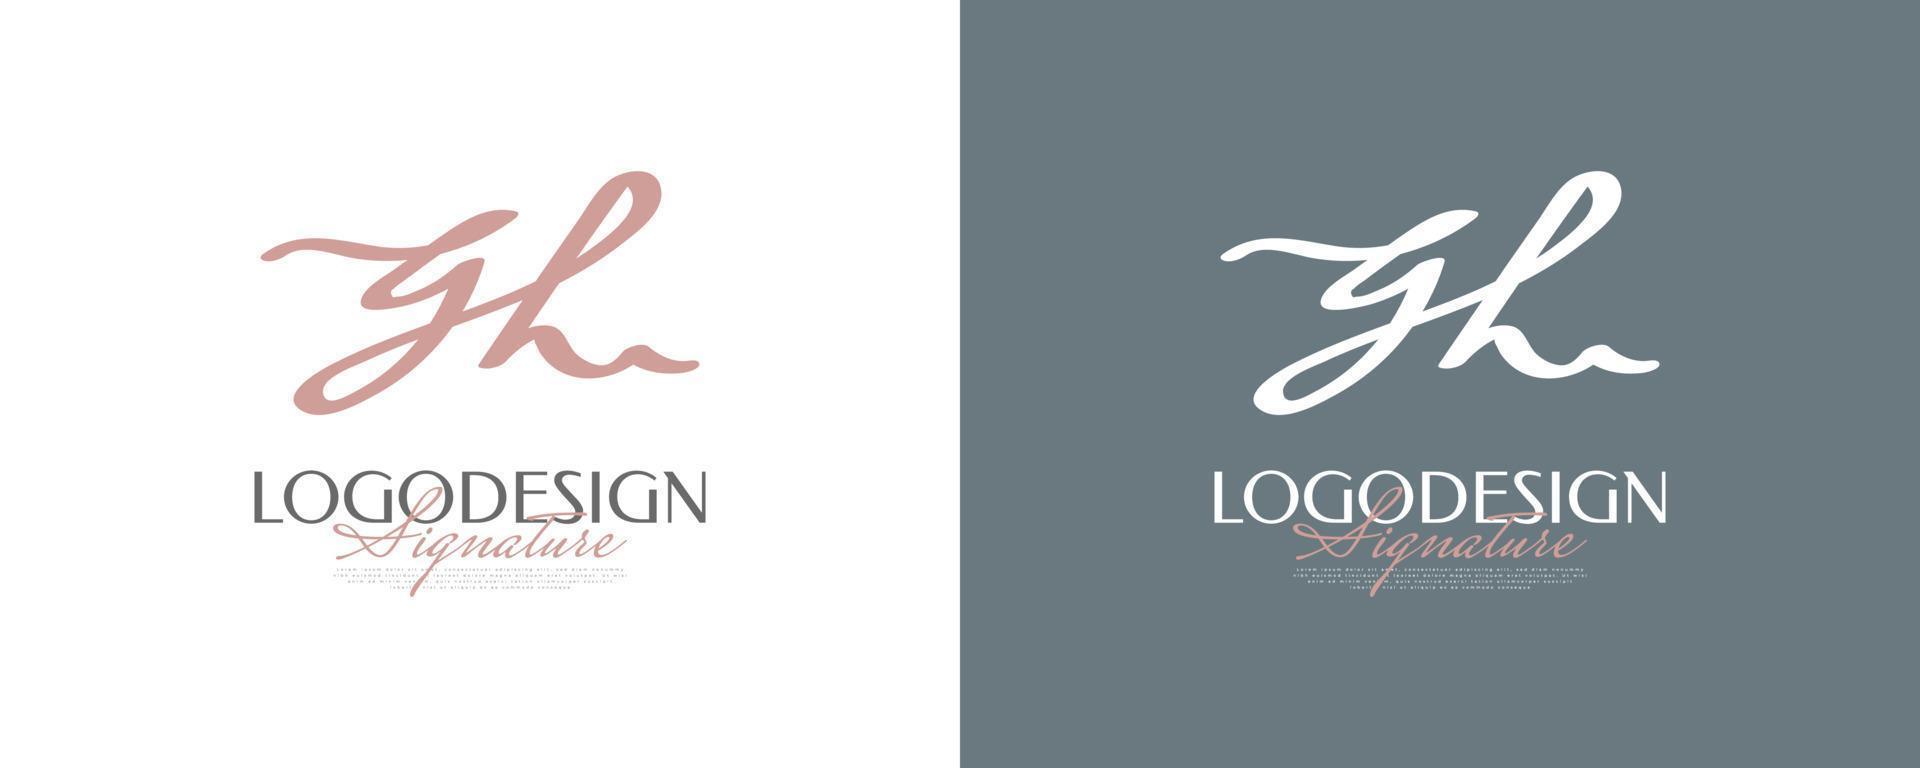 design del logo iniziale g e h in uno stile di scrittura elegante e minimalista. logo o simbolo della firma gh per matrimonio, moda, gioielli, boutique e identità aziendale vettore